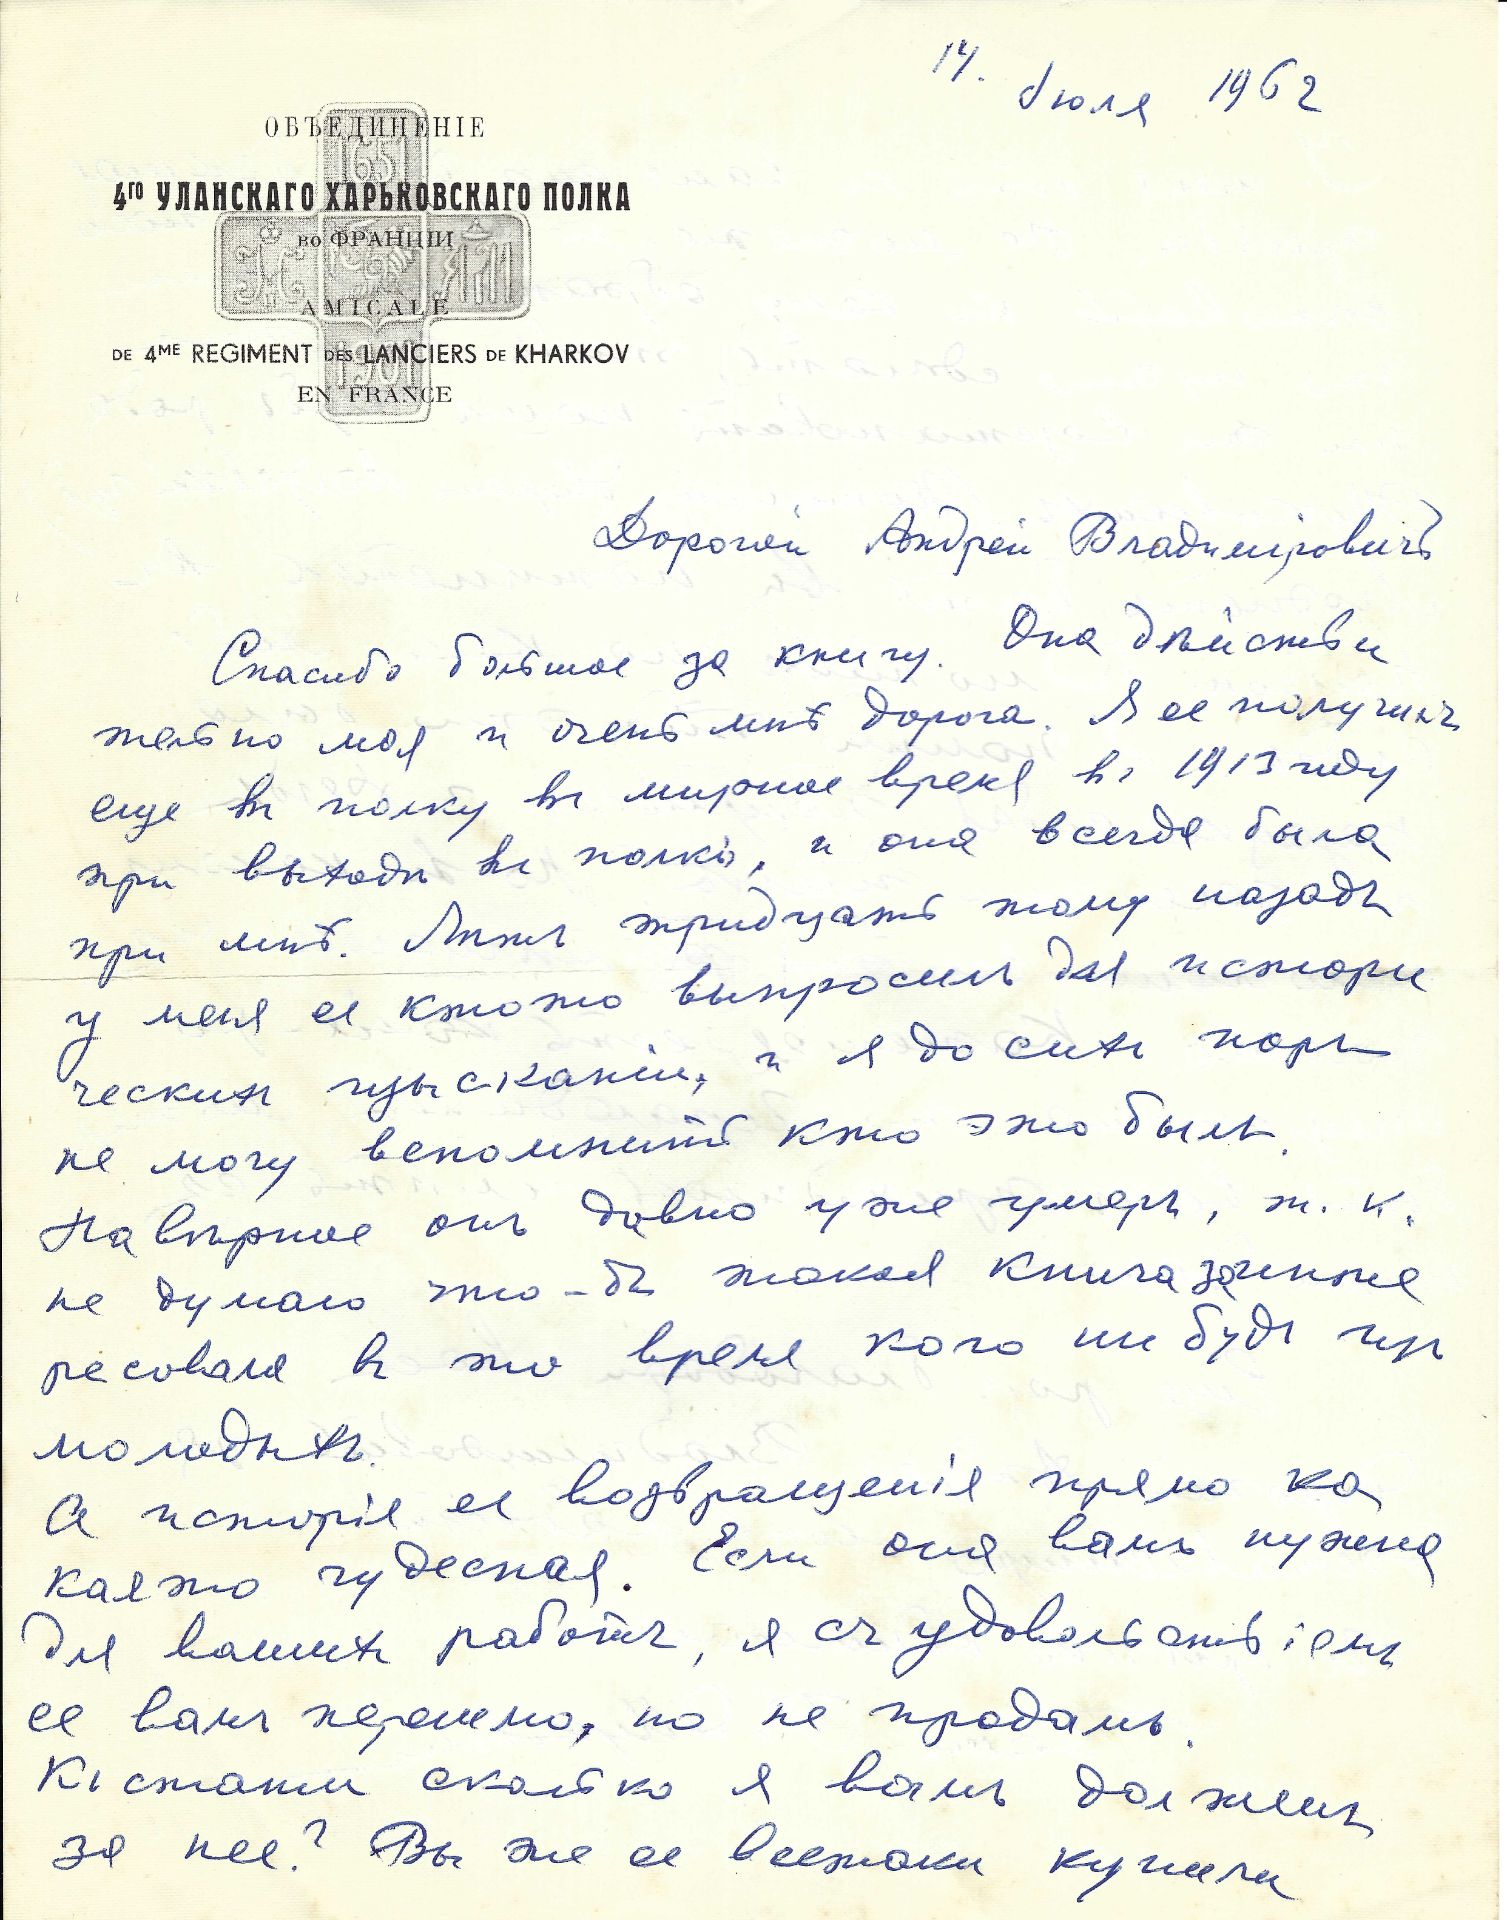 ARCHIVES d’Andreï BALASHOV (1889-1969) • Correspondances avec A.Efremov (1878-1964) en France, V. - Image 32 of 39